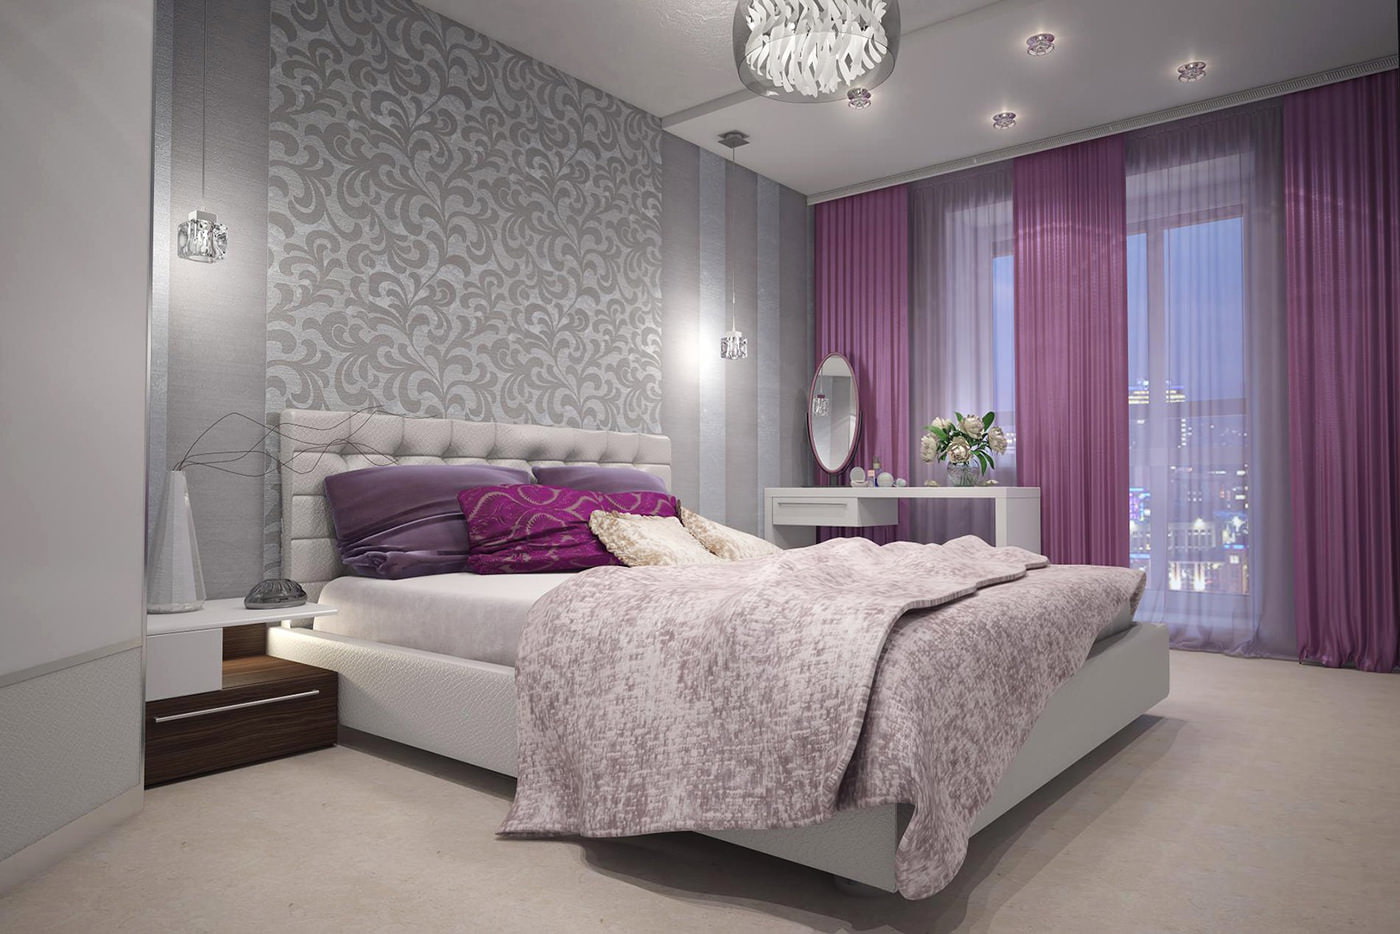 paarse gordijnen in slaapkamerontwerp met grijs behang